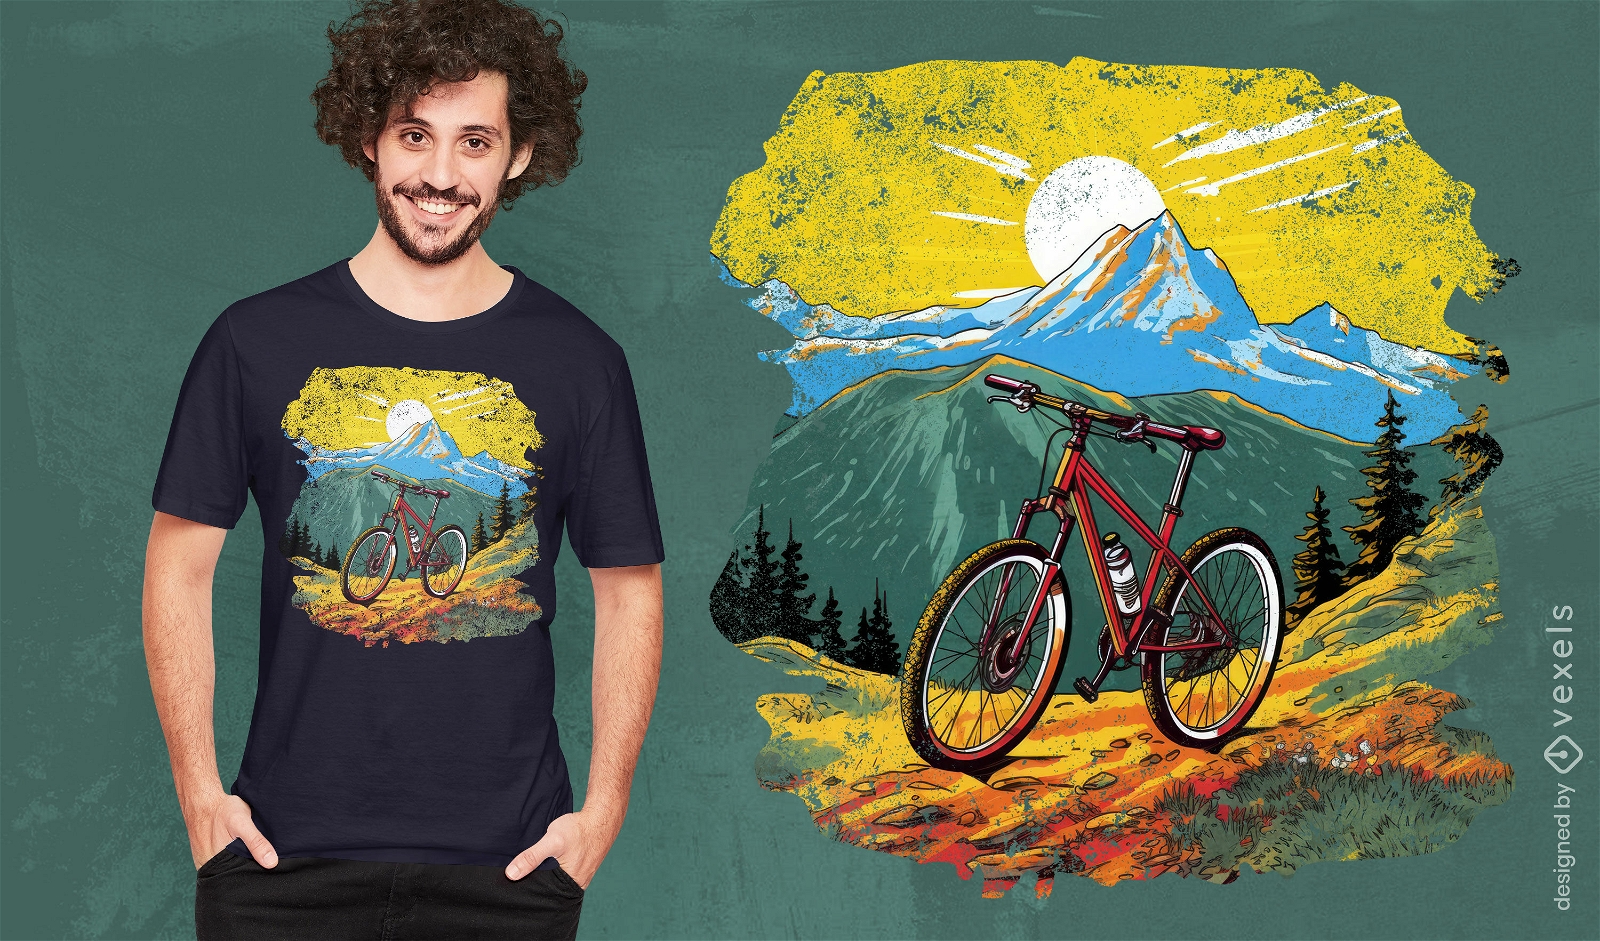 Dise?o de camiseta con escena de ciclismo de monta?a.